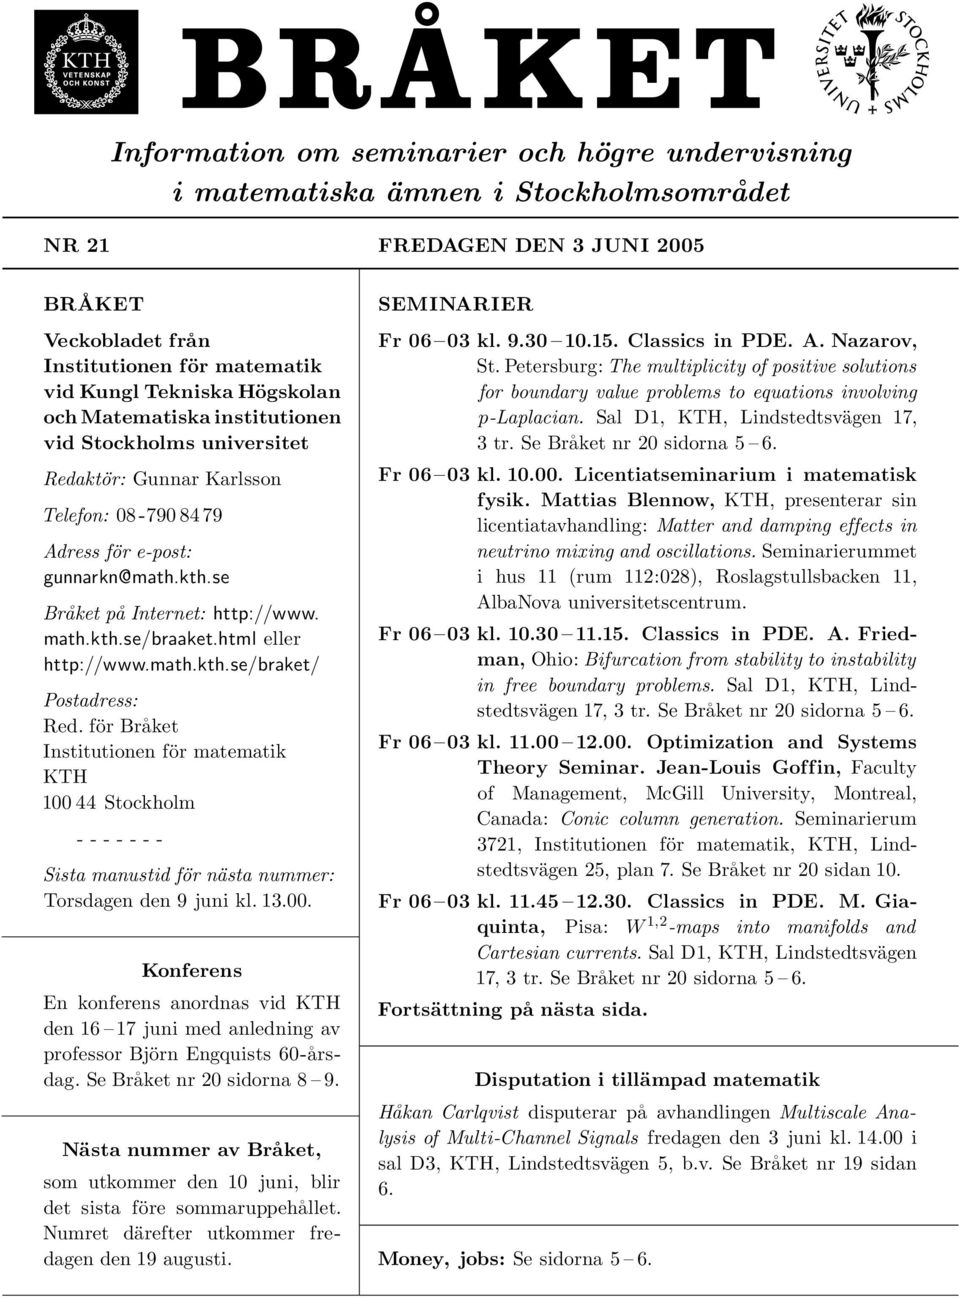 html eller http://www.math.kth.se/braket/ Postadress: Red. för Bra ket Institutionen för matematik KTH 100 